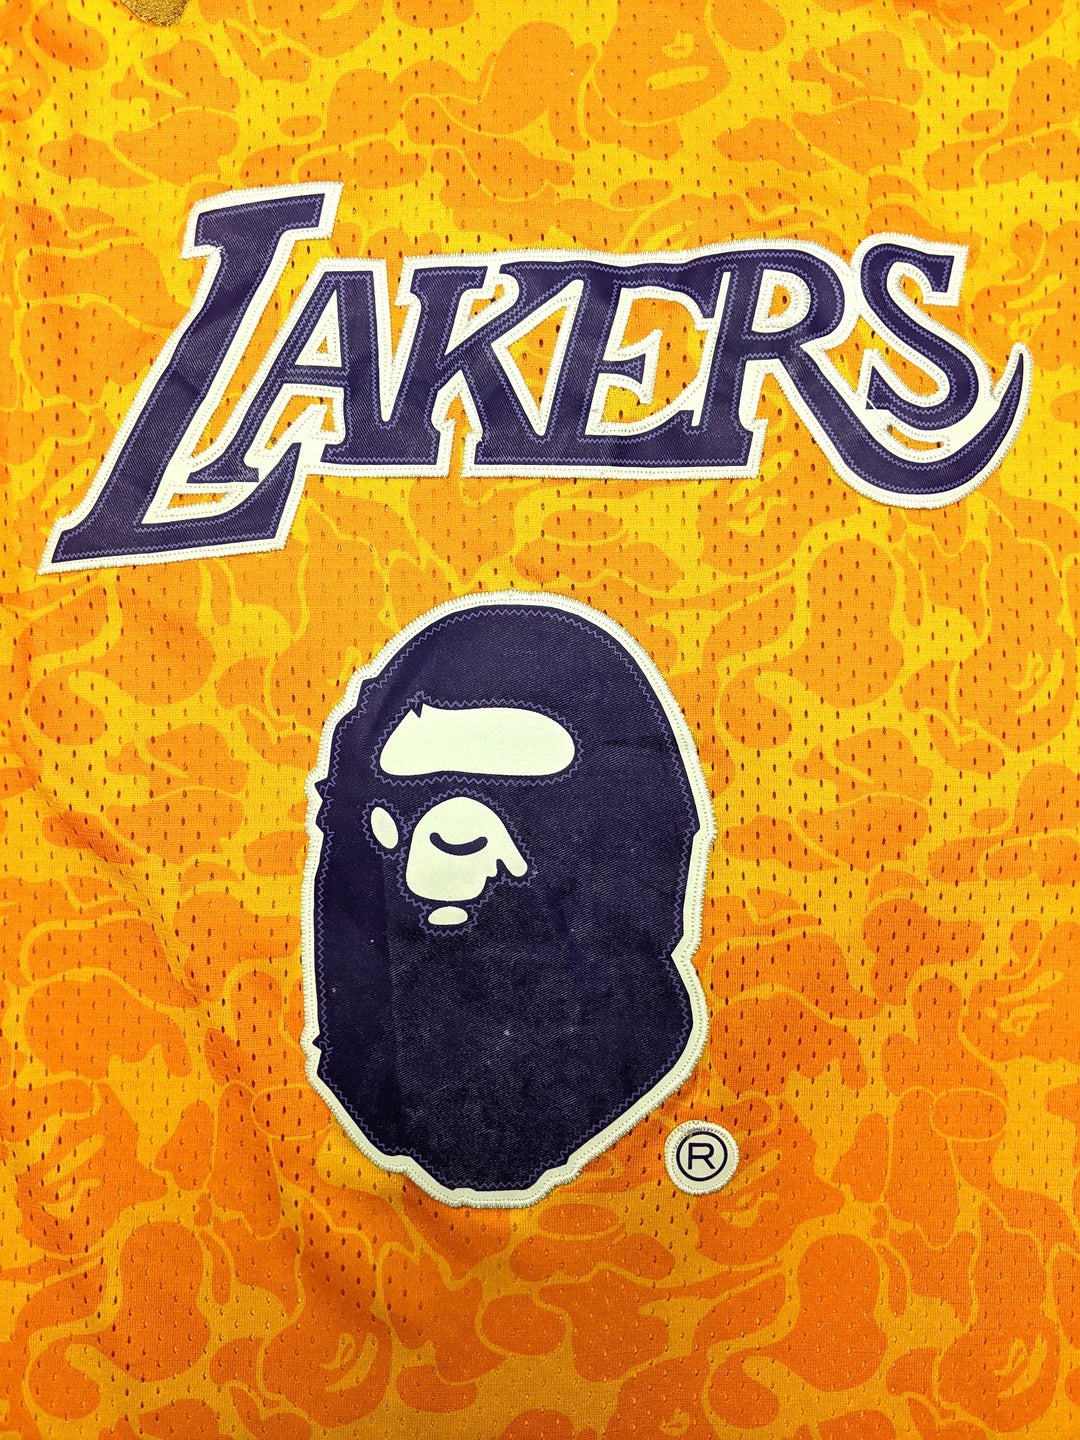 Bape Lakers Jersey 1 pc 1 lb B0201213 - Raghouse